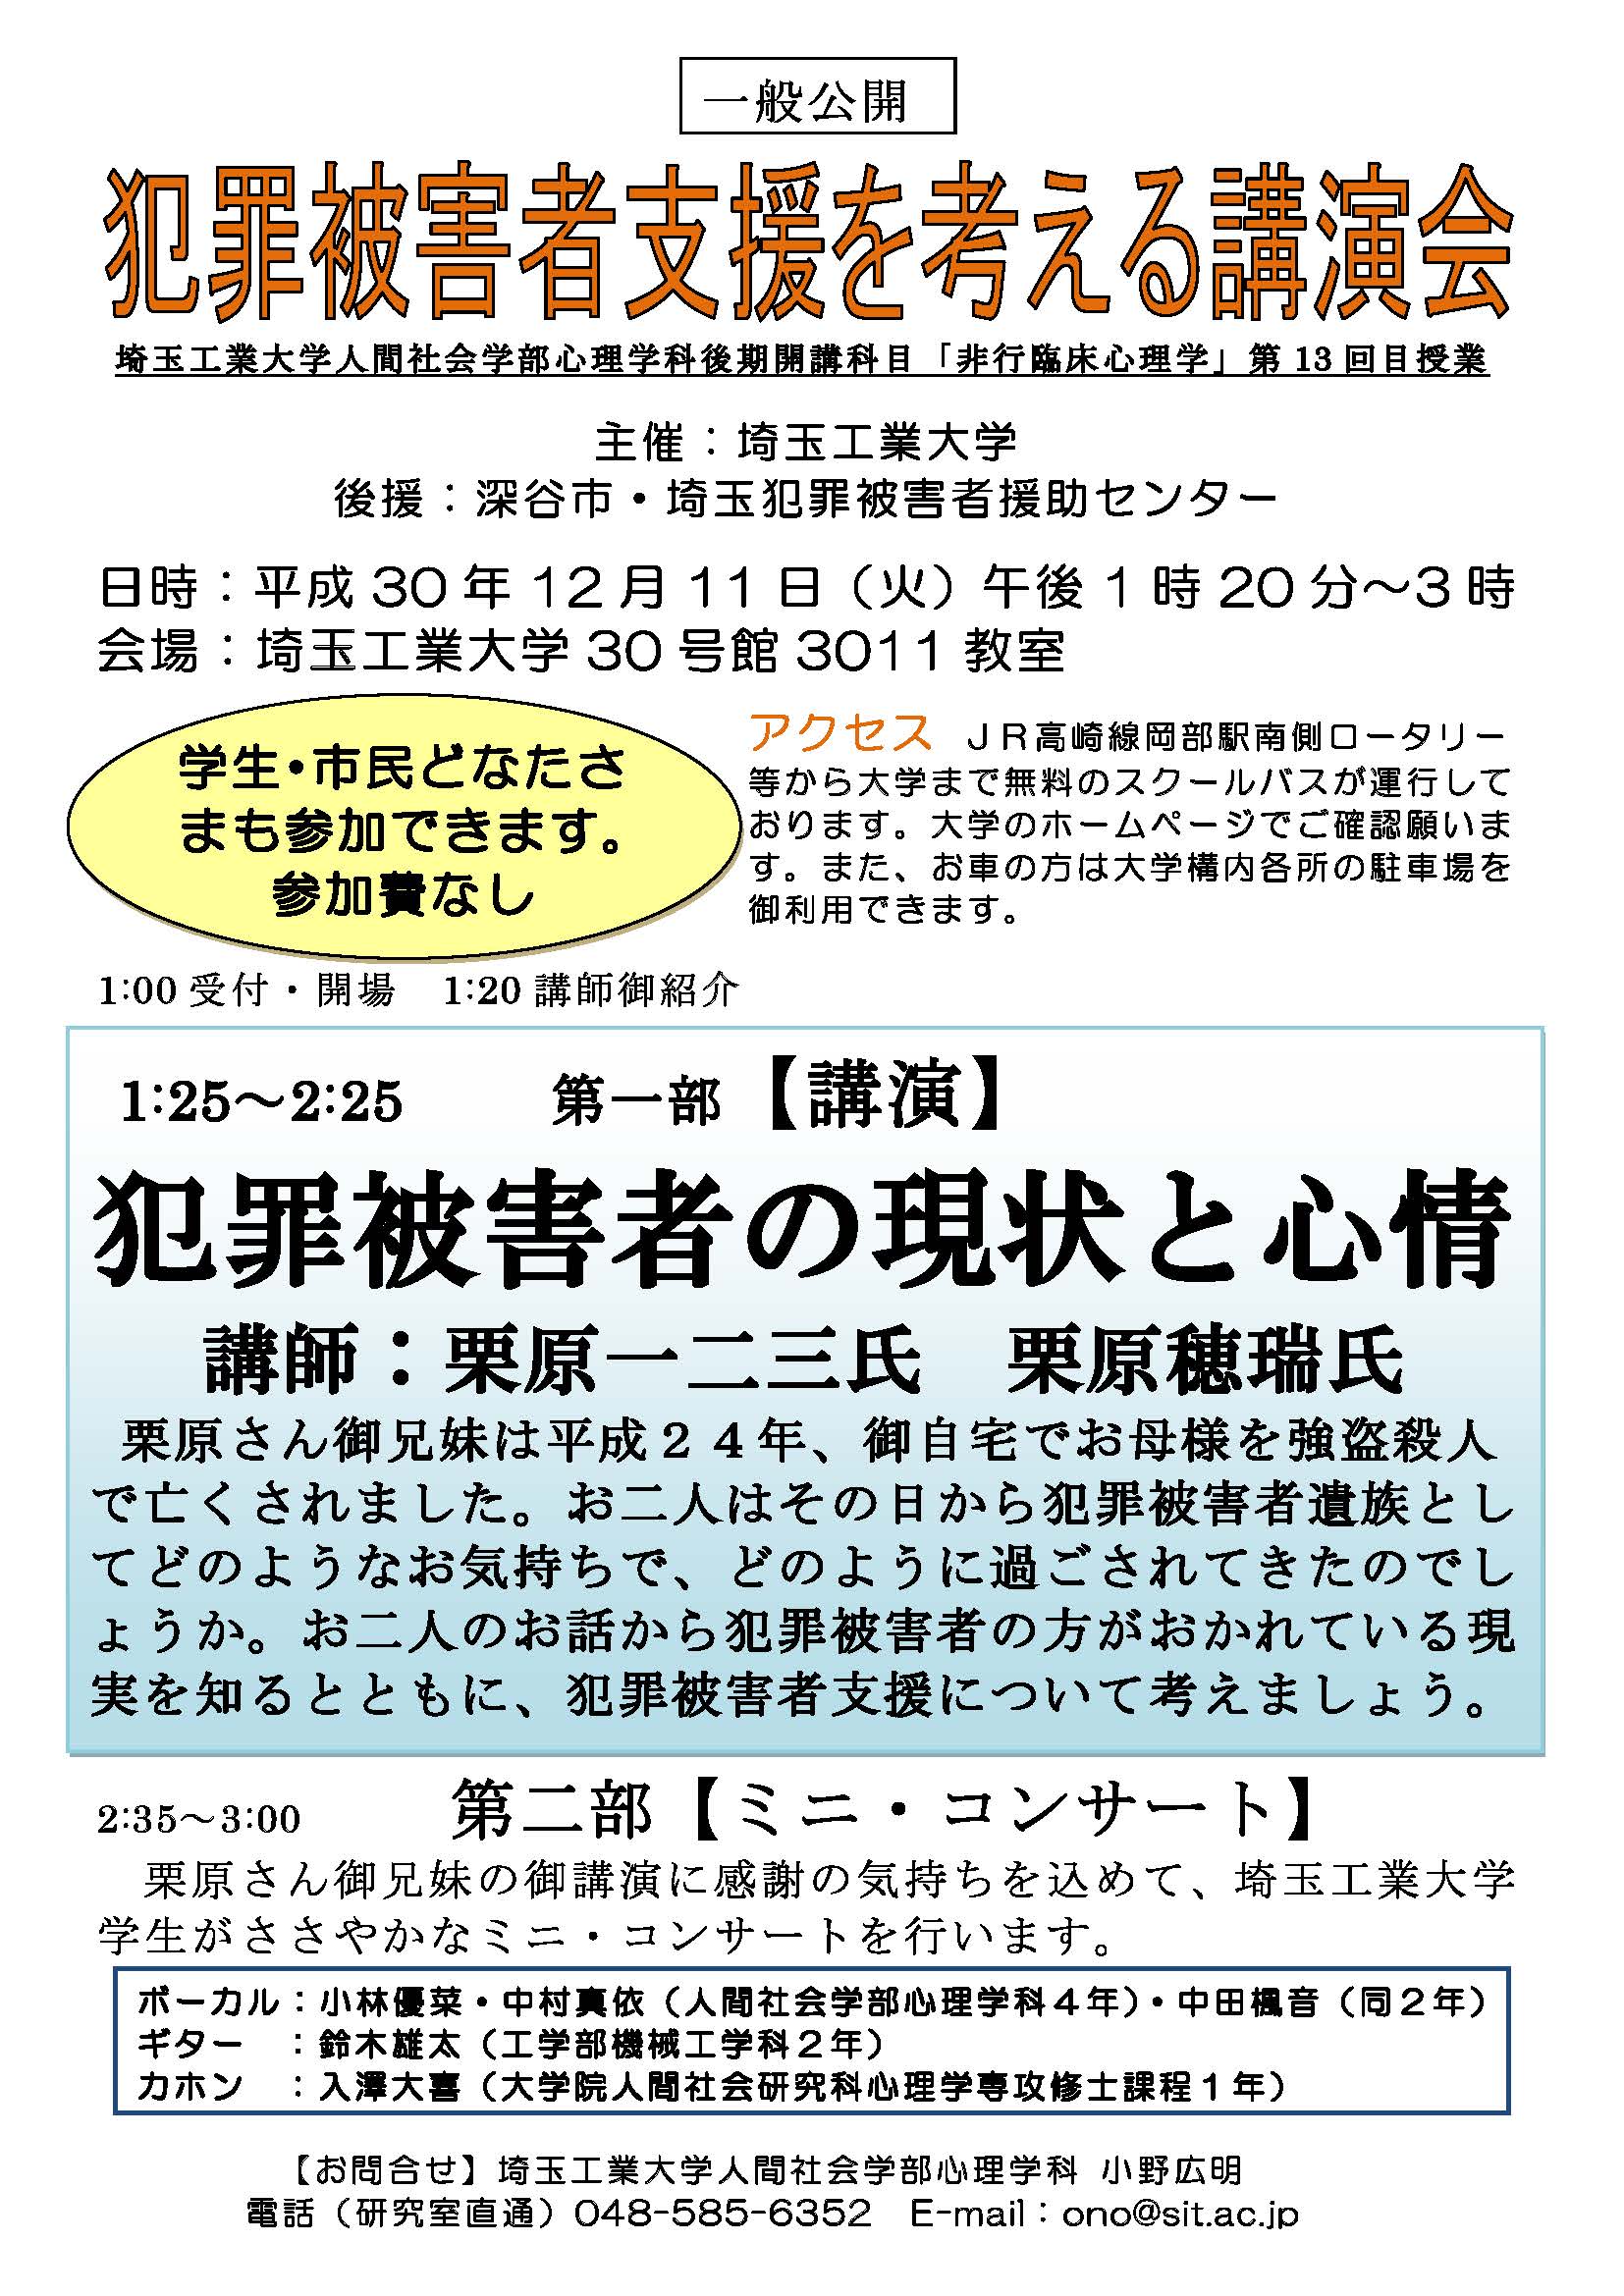 犯罪被害者支援を考える講演会を開催いたします 新着情報 お知らせ 埼玉工業大学